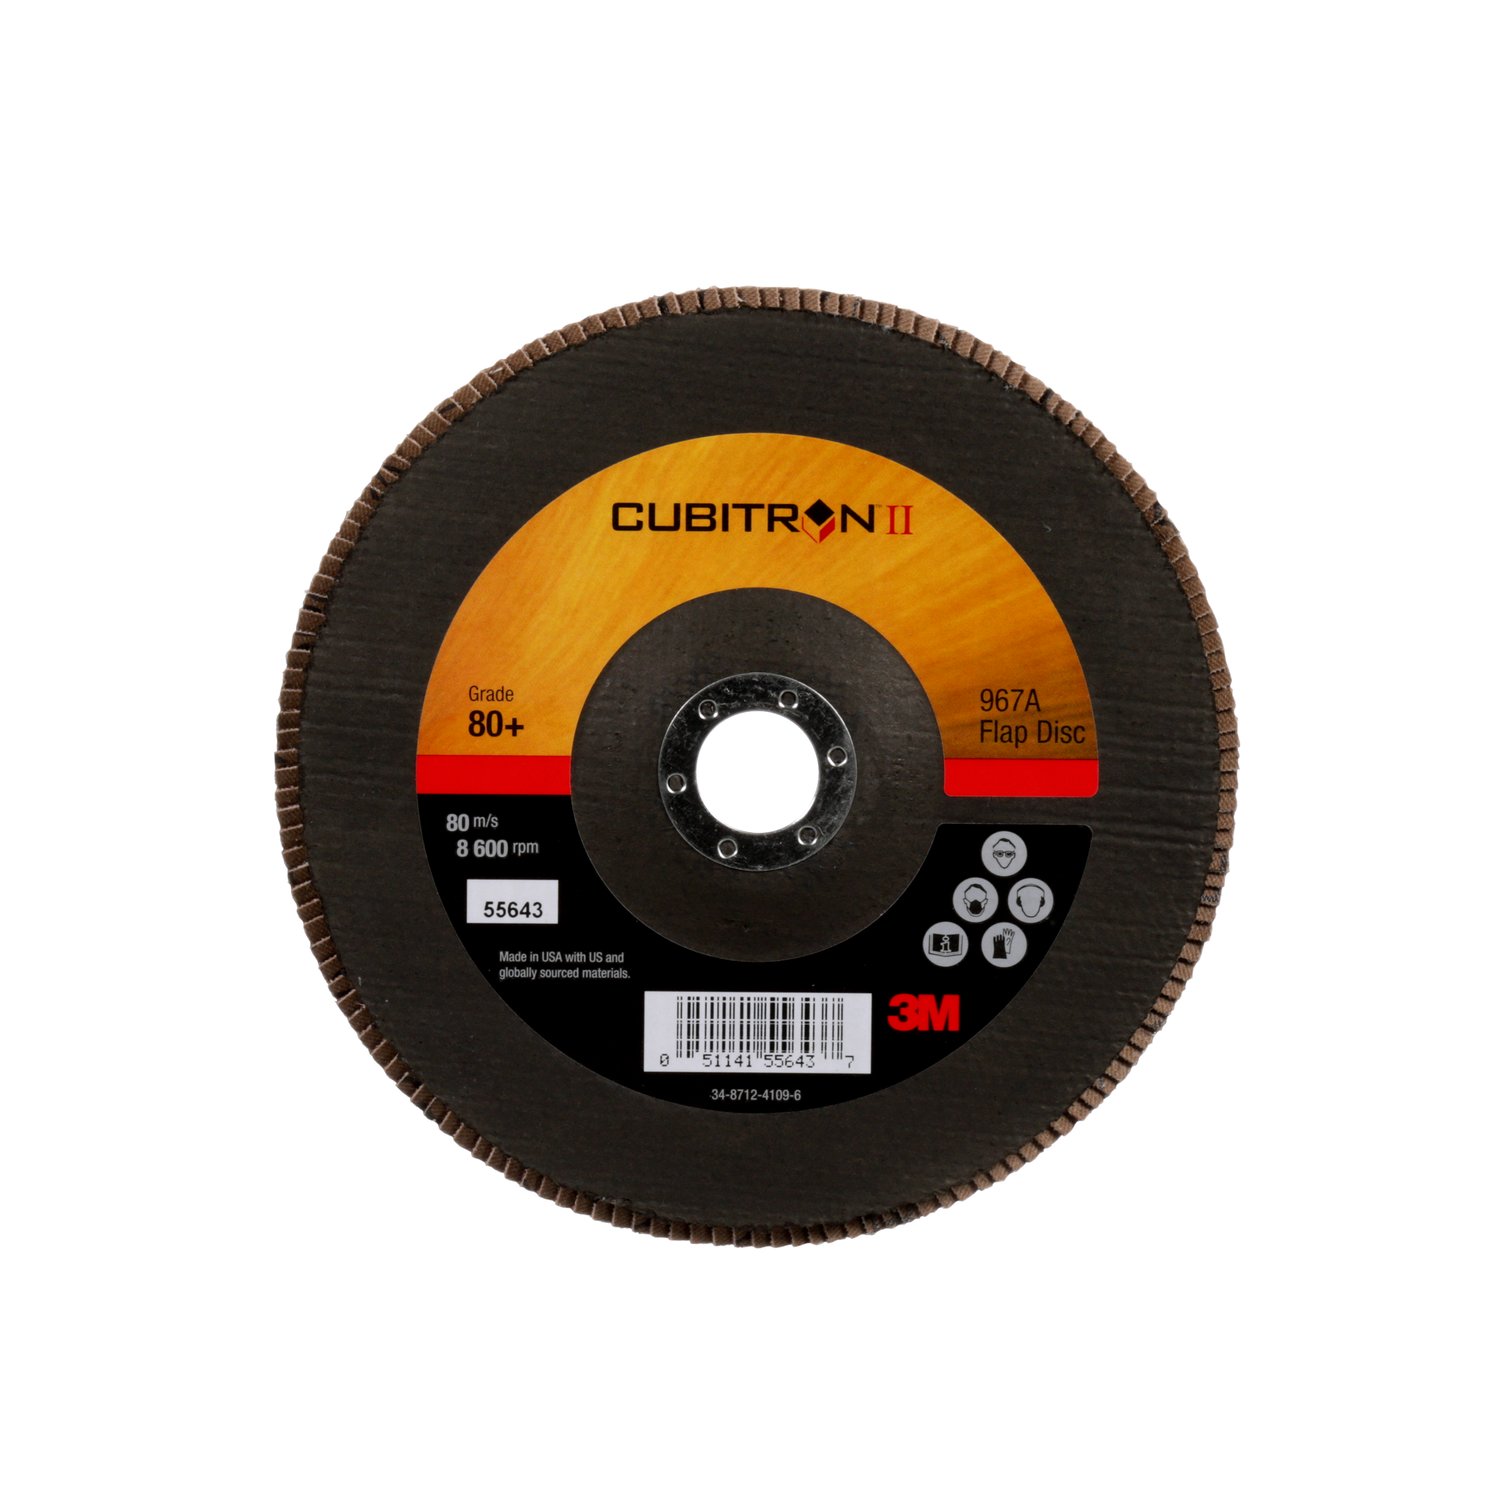 7010327064 - 3M Cubitron II Flap Disc 967A, 80+, T27, 7 in x 7/8 in, Giant, 5
ea/Case